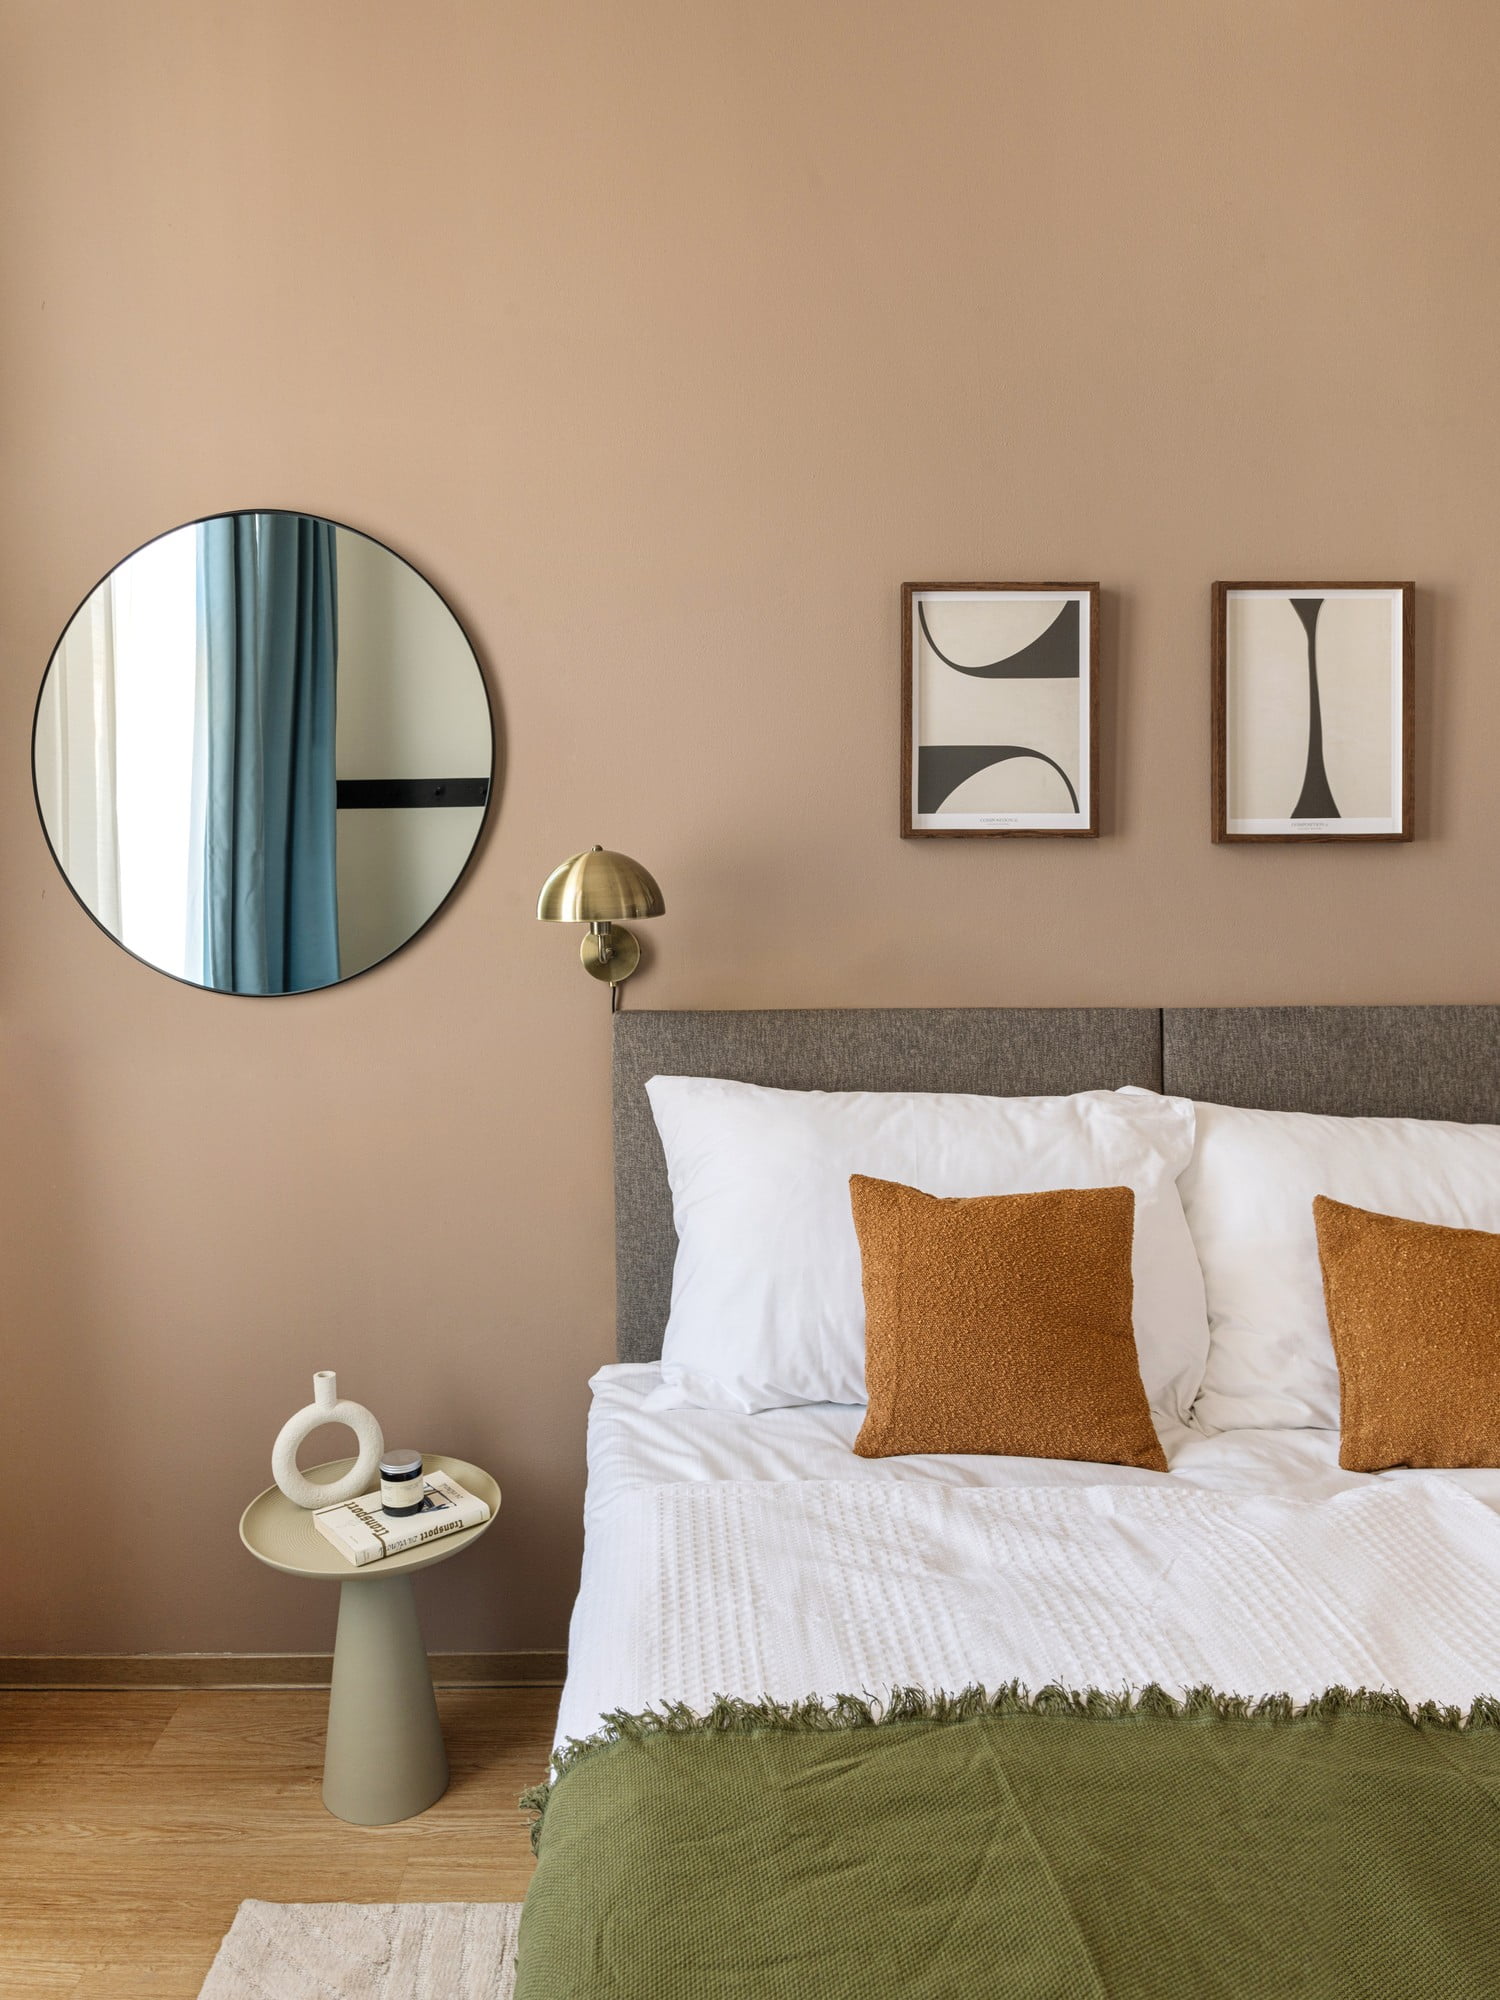 V modernej spálni je dôležitý vizuálny pokoj, ktorý docielite voľbou nábytku s jednoduchými líniami a bez zbytočných ozdôb.